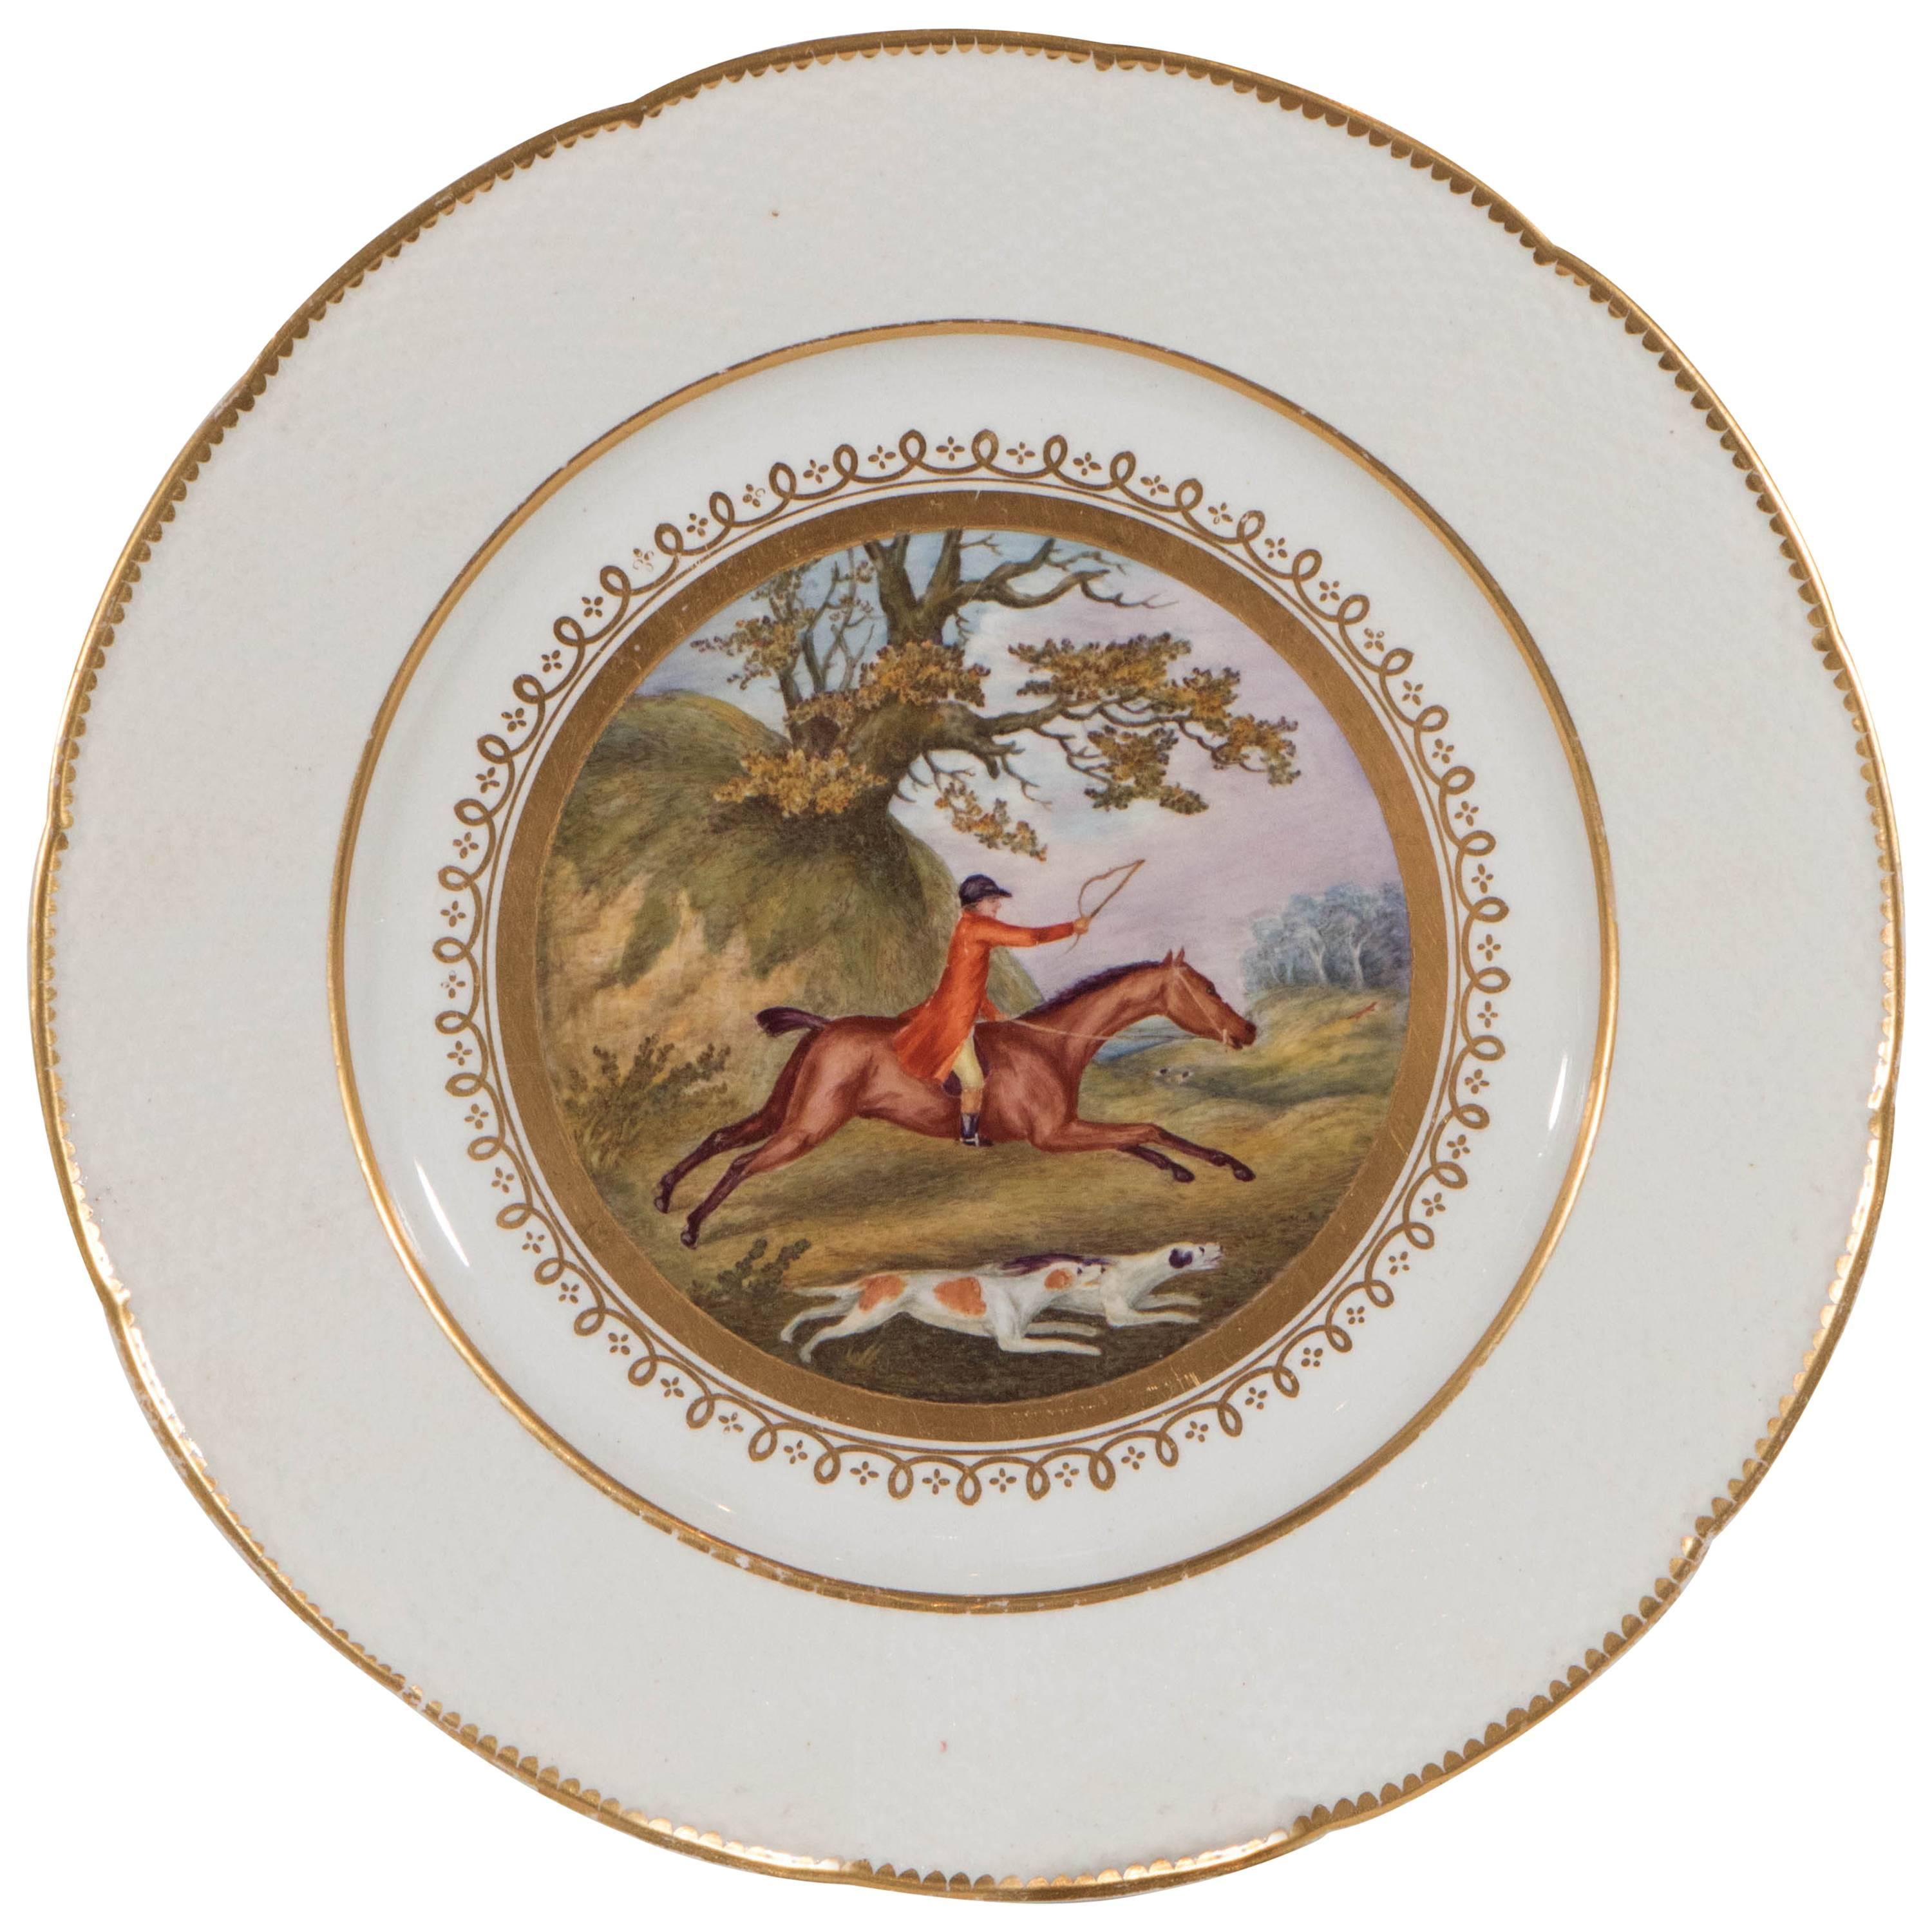 Scène de chasse au renard peinte à la main sur une assiette anglaise ancienne fabriquée vers 1815